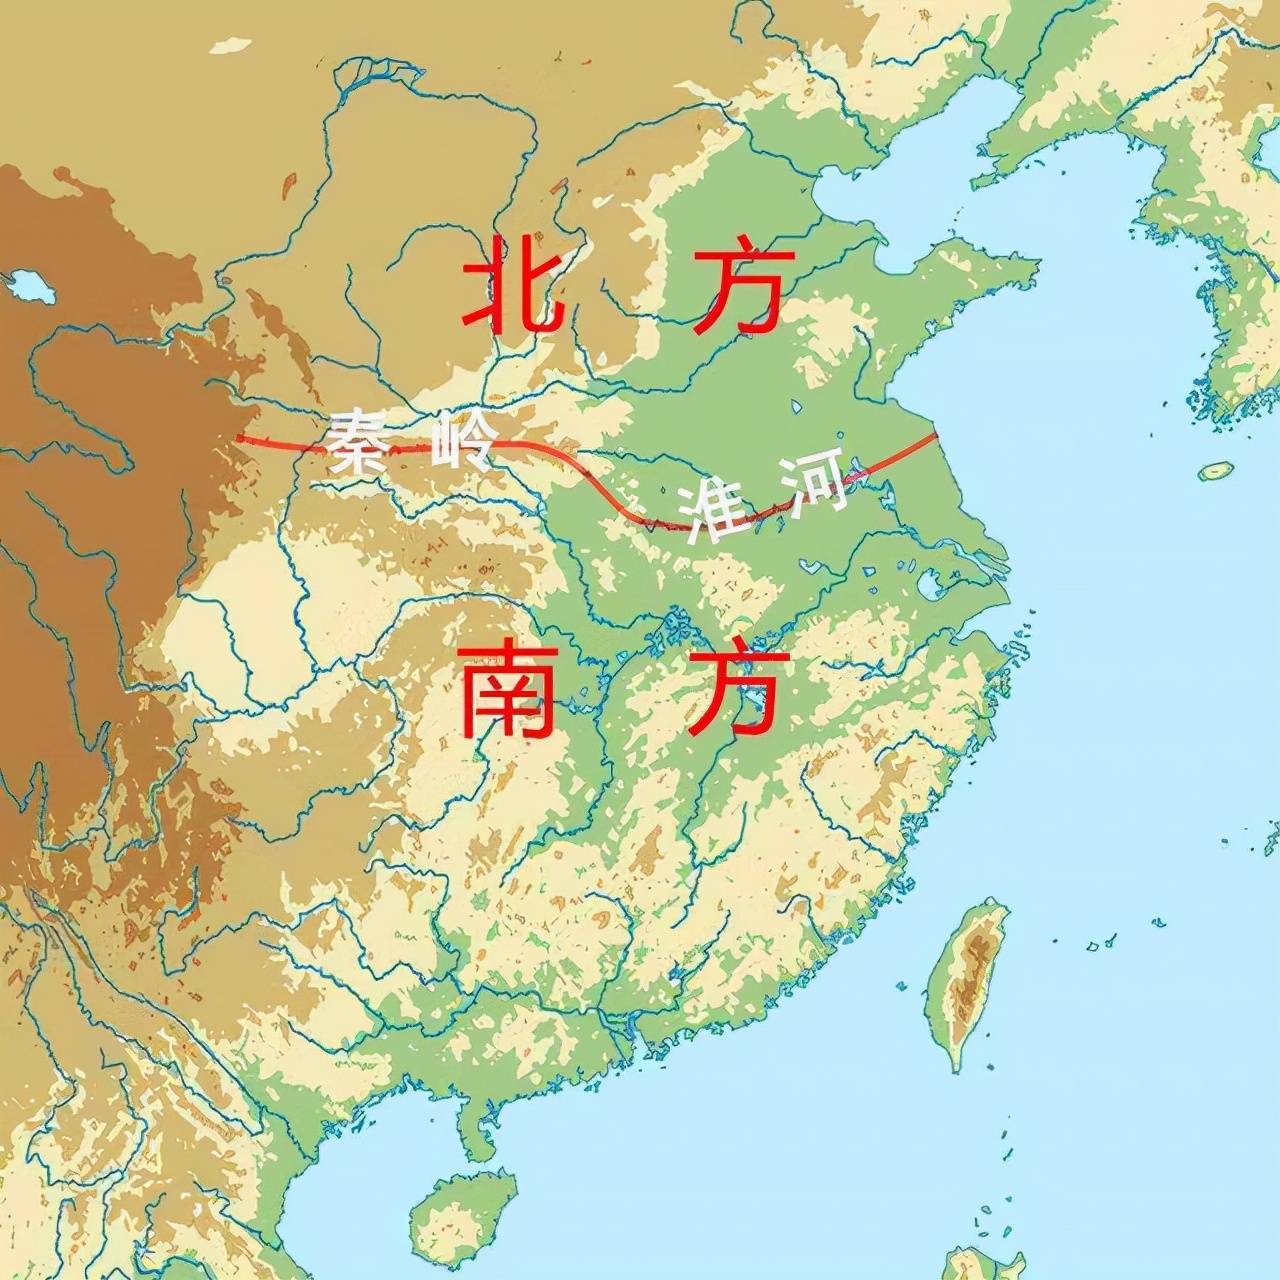 原创中国南北分界线横穿的省份较为尴尬南北方人傻傻分不清楚